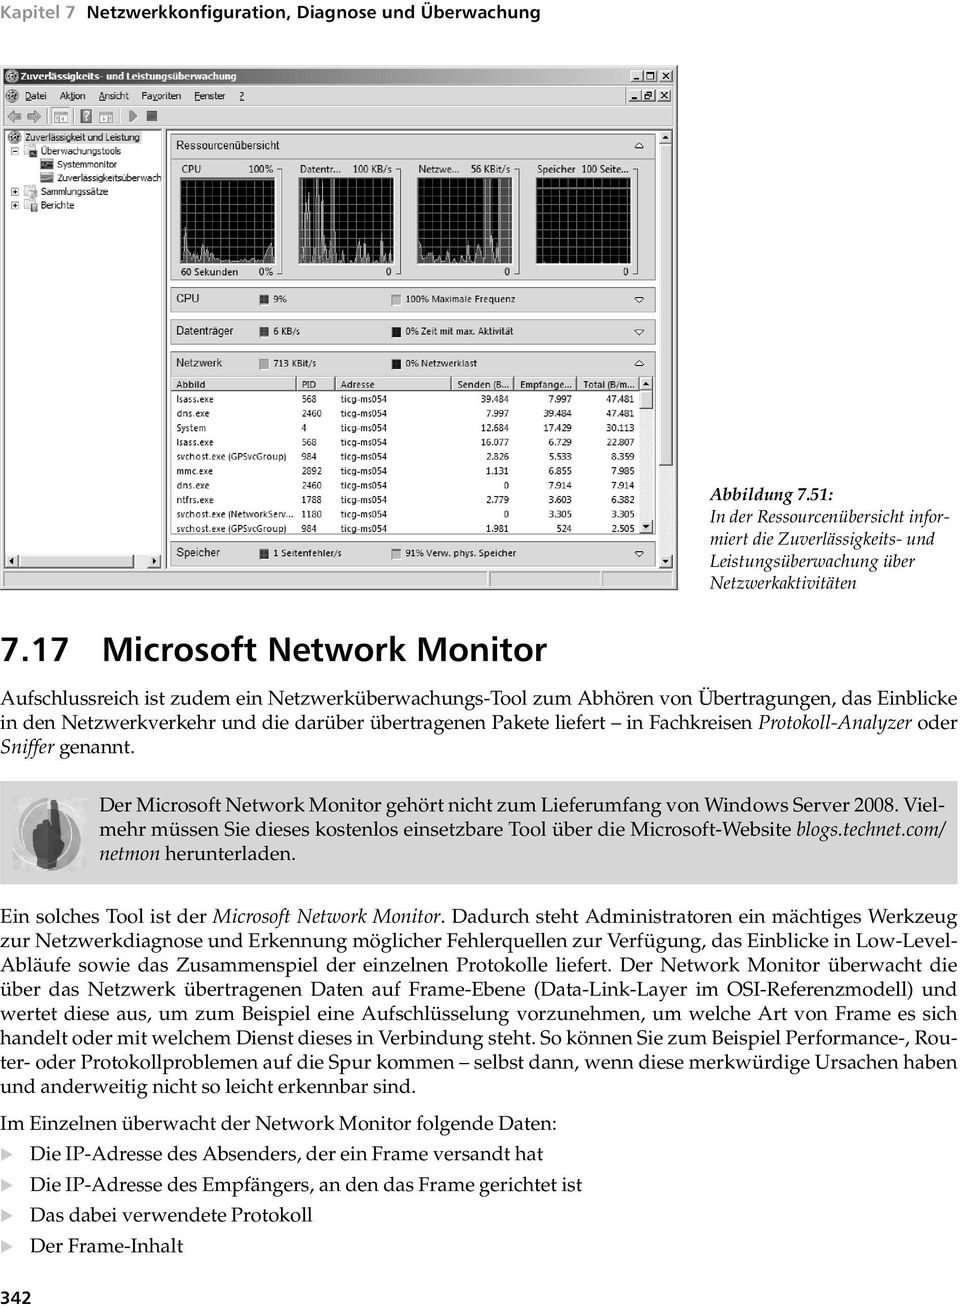 Fachkreisen Protokoll-Analyzer oder Sniffer genannt. Der Microsoft Network Monitor gehört nicht zum Lieferumfang von Windows Server 2008.